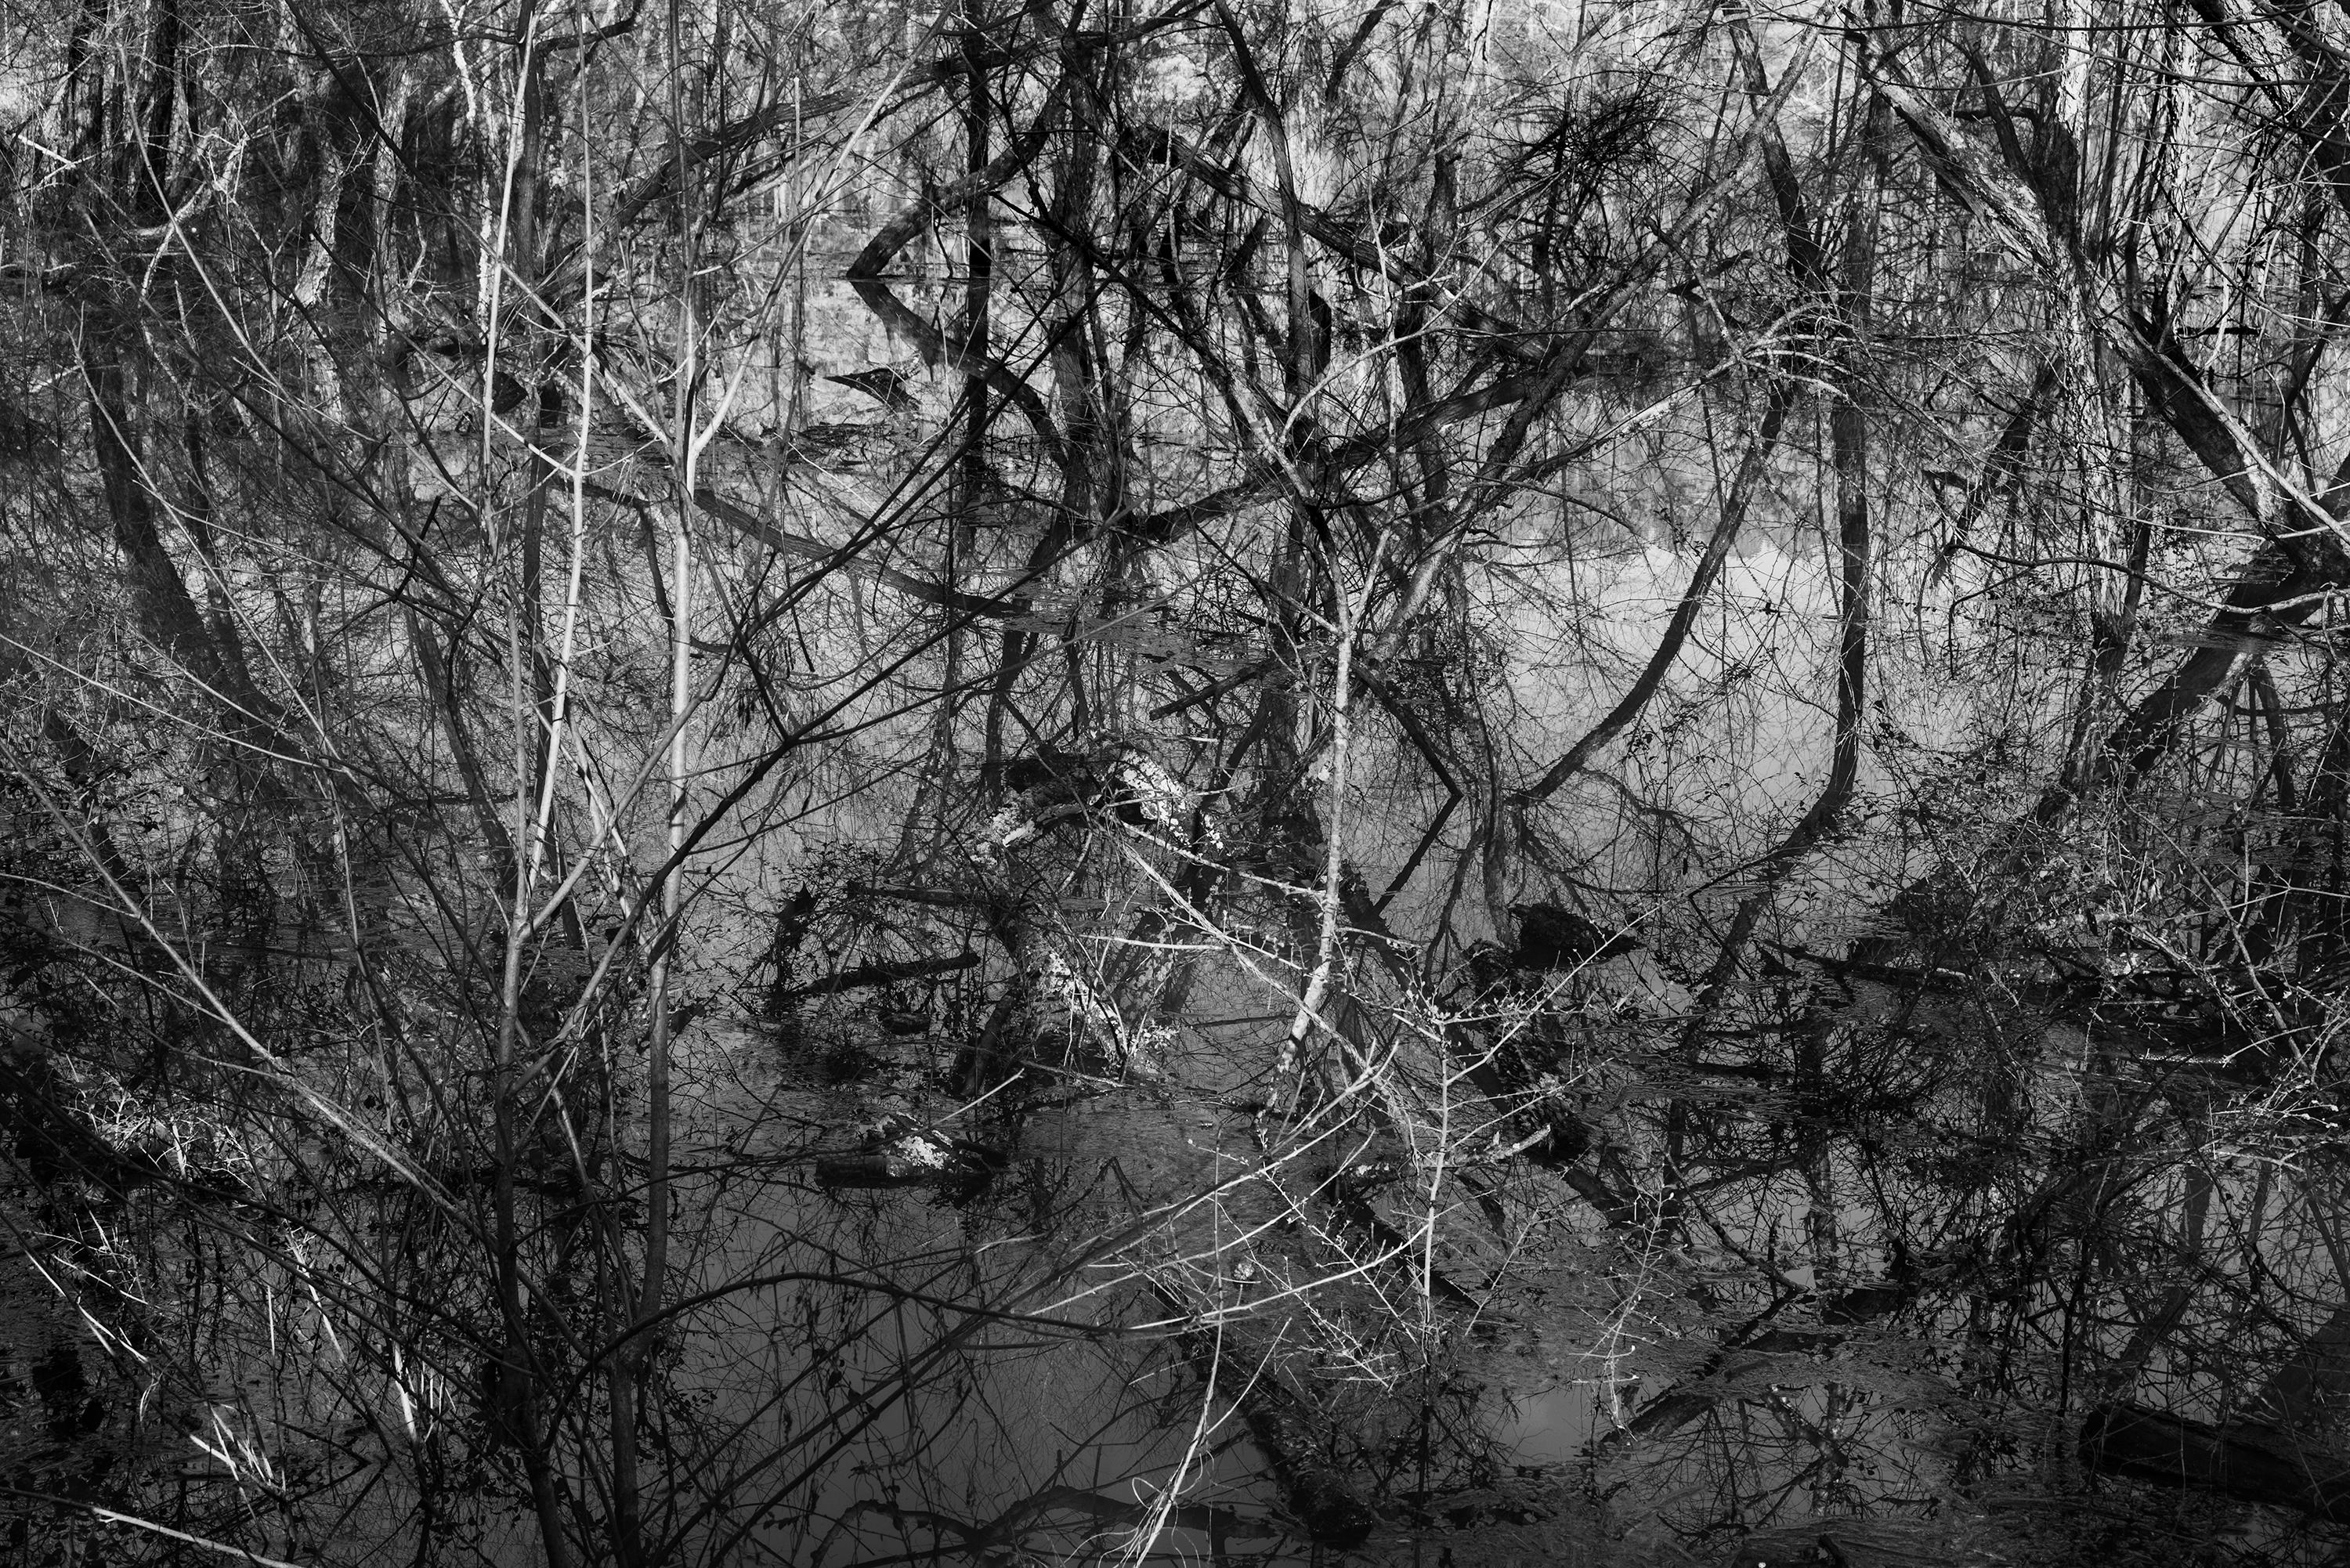 Black and White Photograph Richard Skoonberg - 'Winter Opus' - Noir et Blanc - Photographie de paysage - Eliot Porter